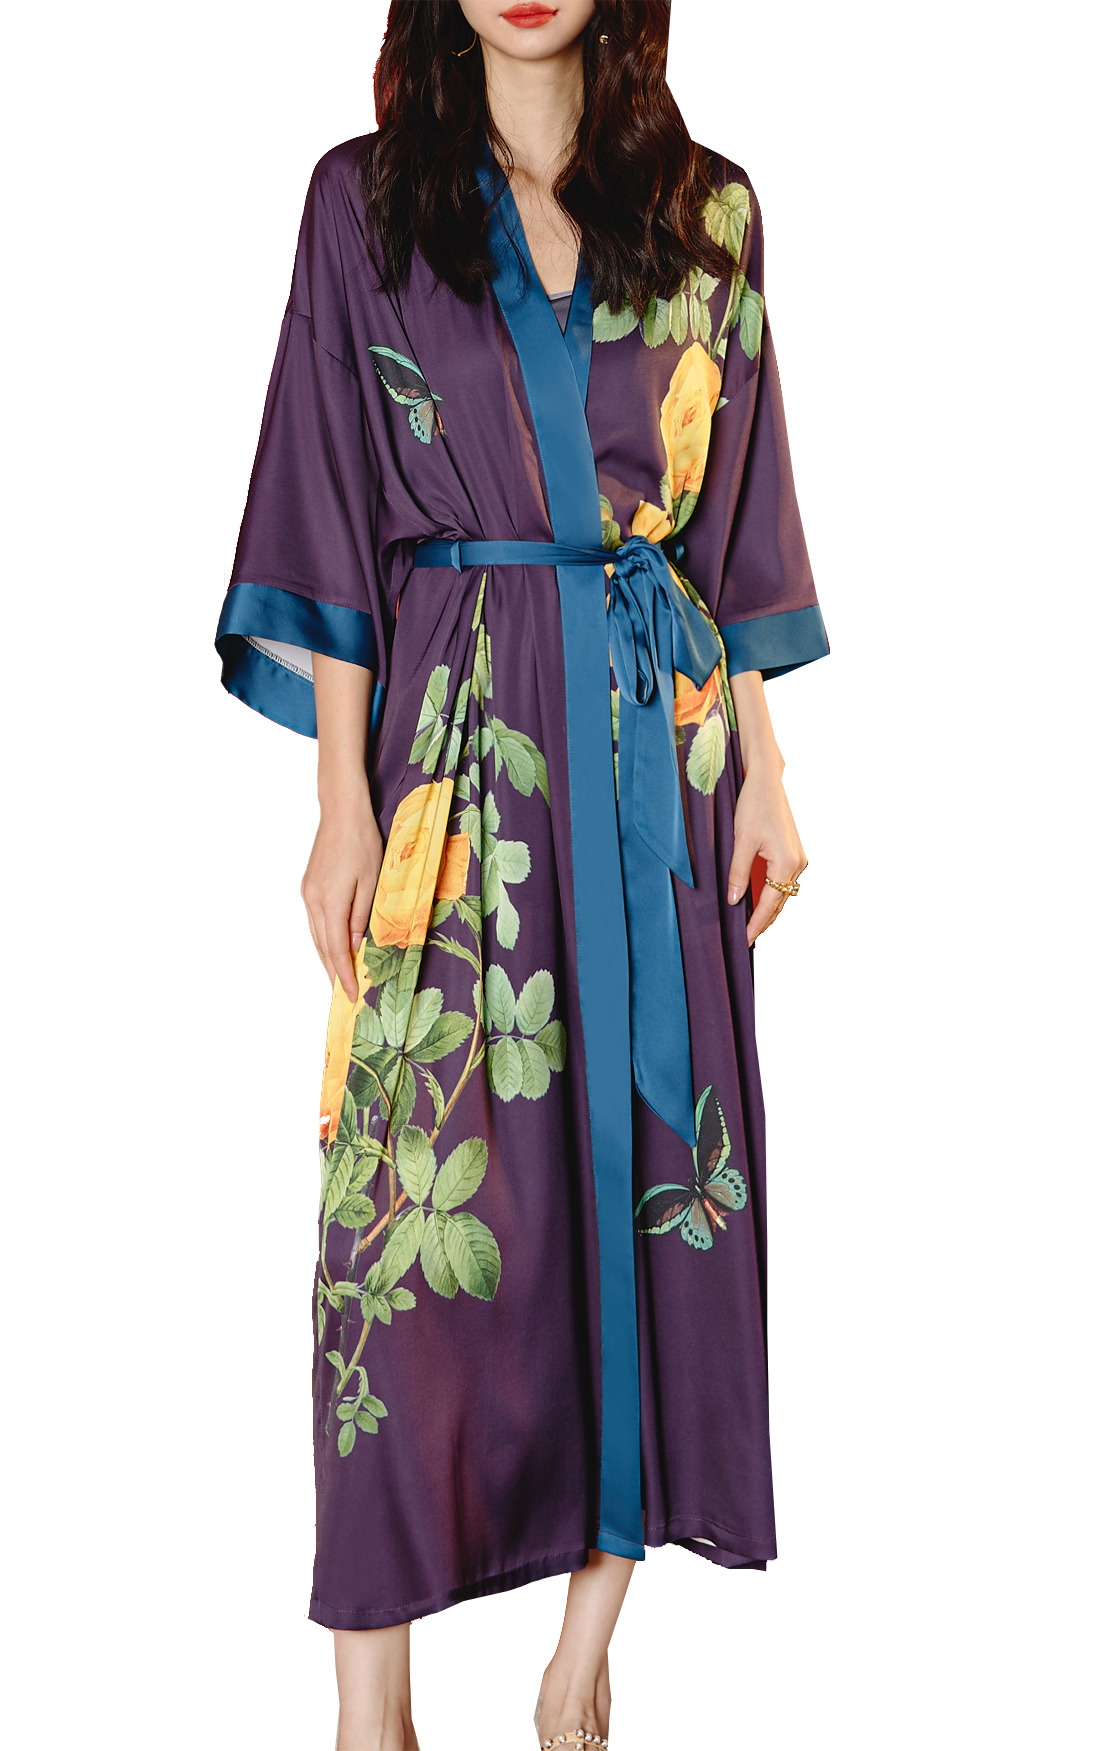 Frauen Satin Nachtwäsche Kimono Dressing Kleid elegante lange Hochzeit Brautjungfern Robe Nightwear Nightwear gegen Hals drei Viertelhülle Belt Loungewear Pyjamas